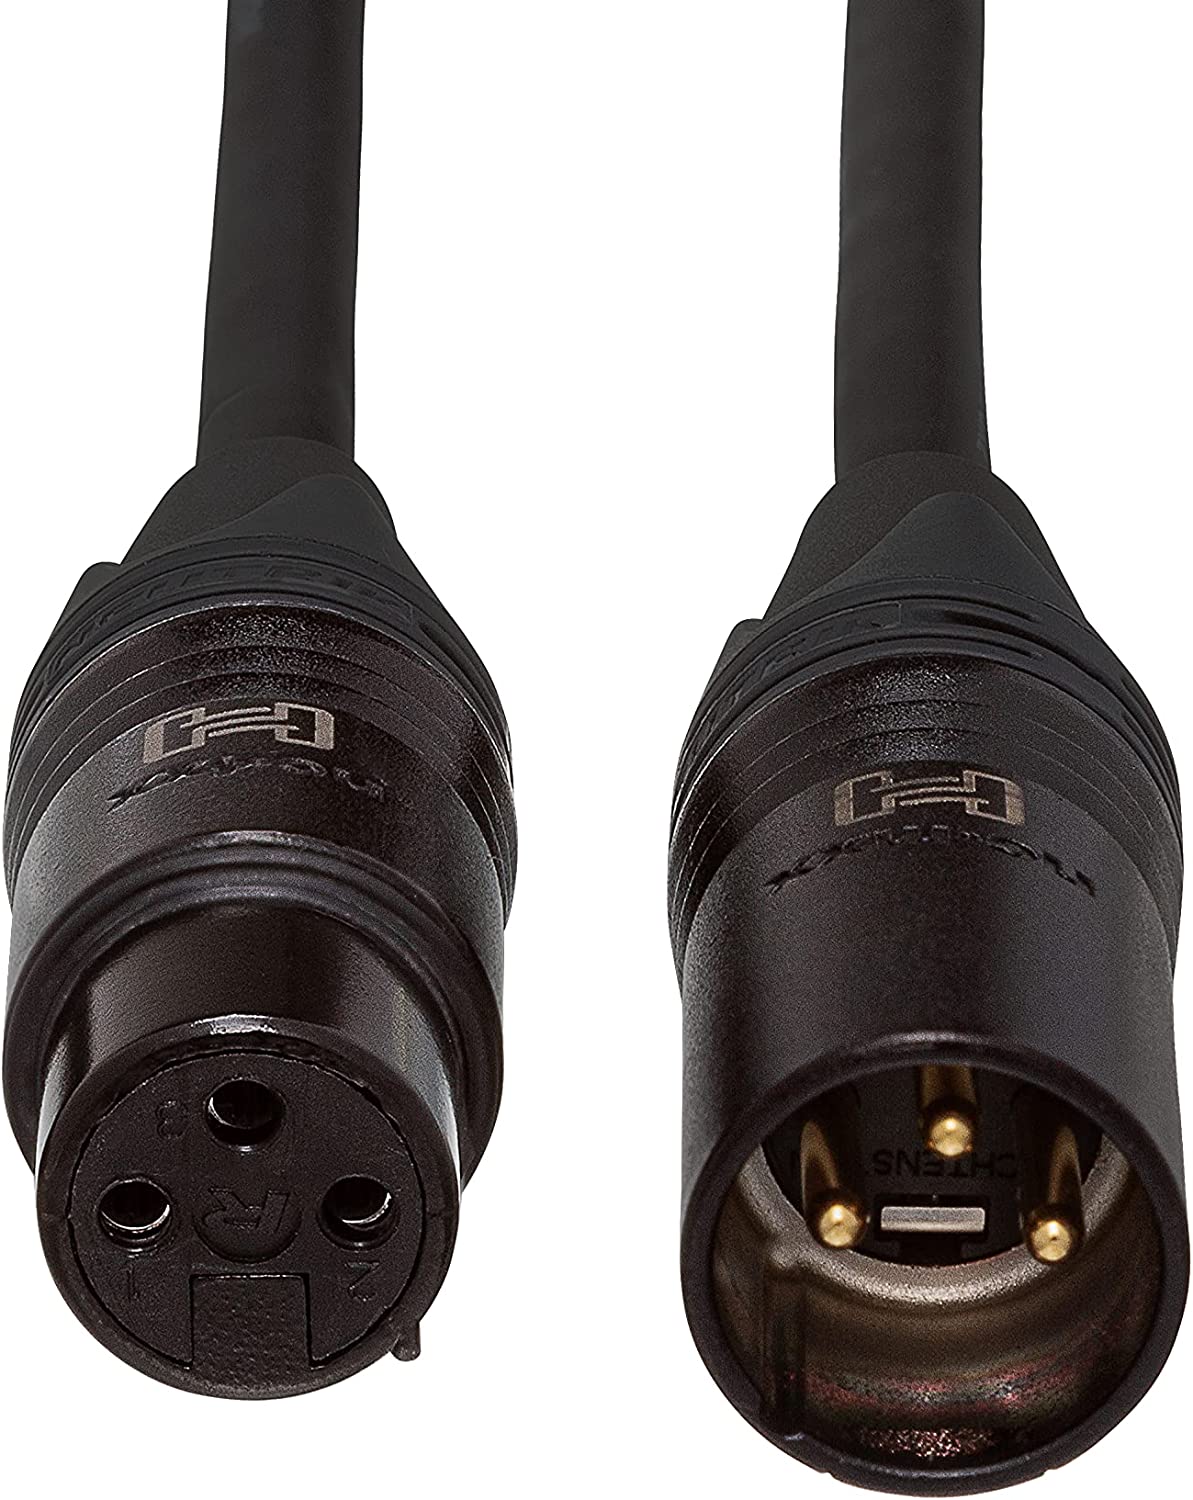 Hosa CMK-075AU Neutrik XLR3F to XLR3M Edge Microphone Cable, 75 feet